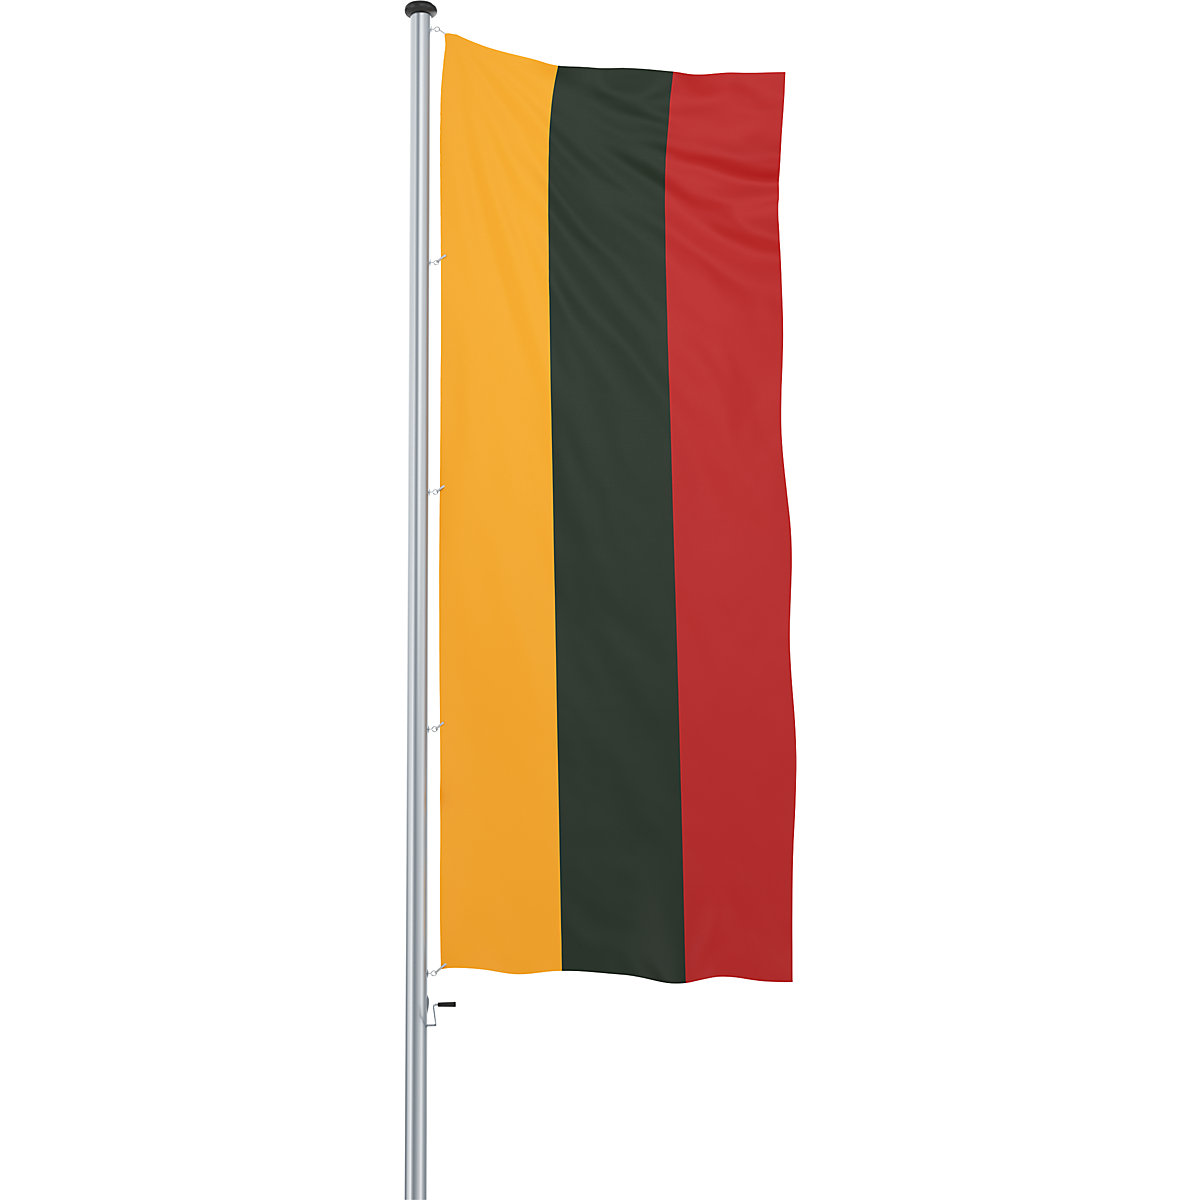 Mannus – Bandera para izar/bandera del país (Imagen del producto 35)